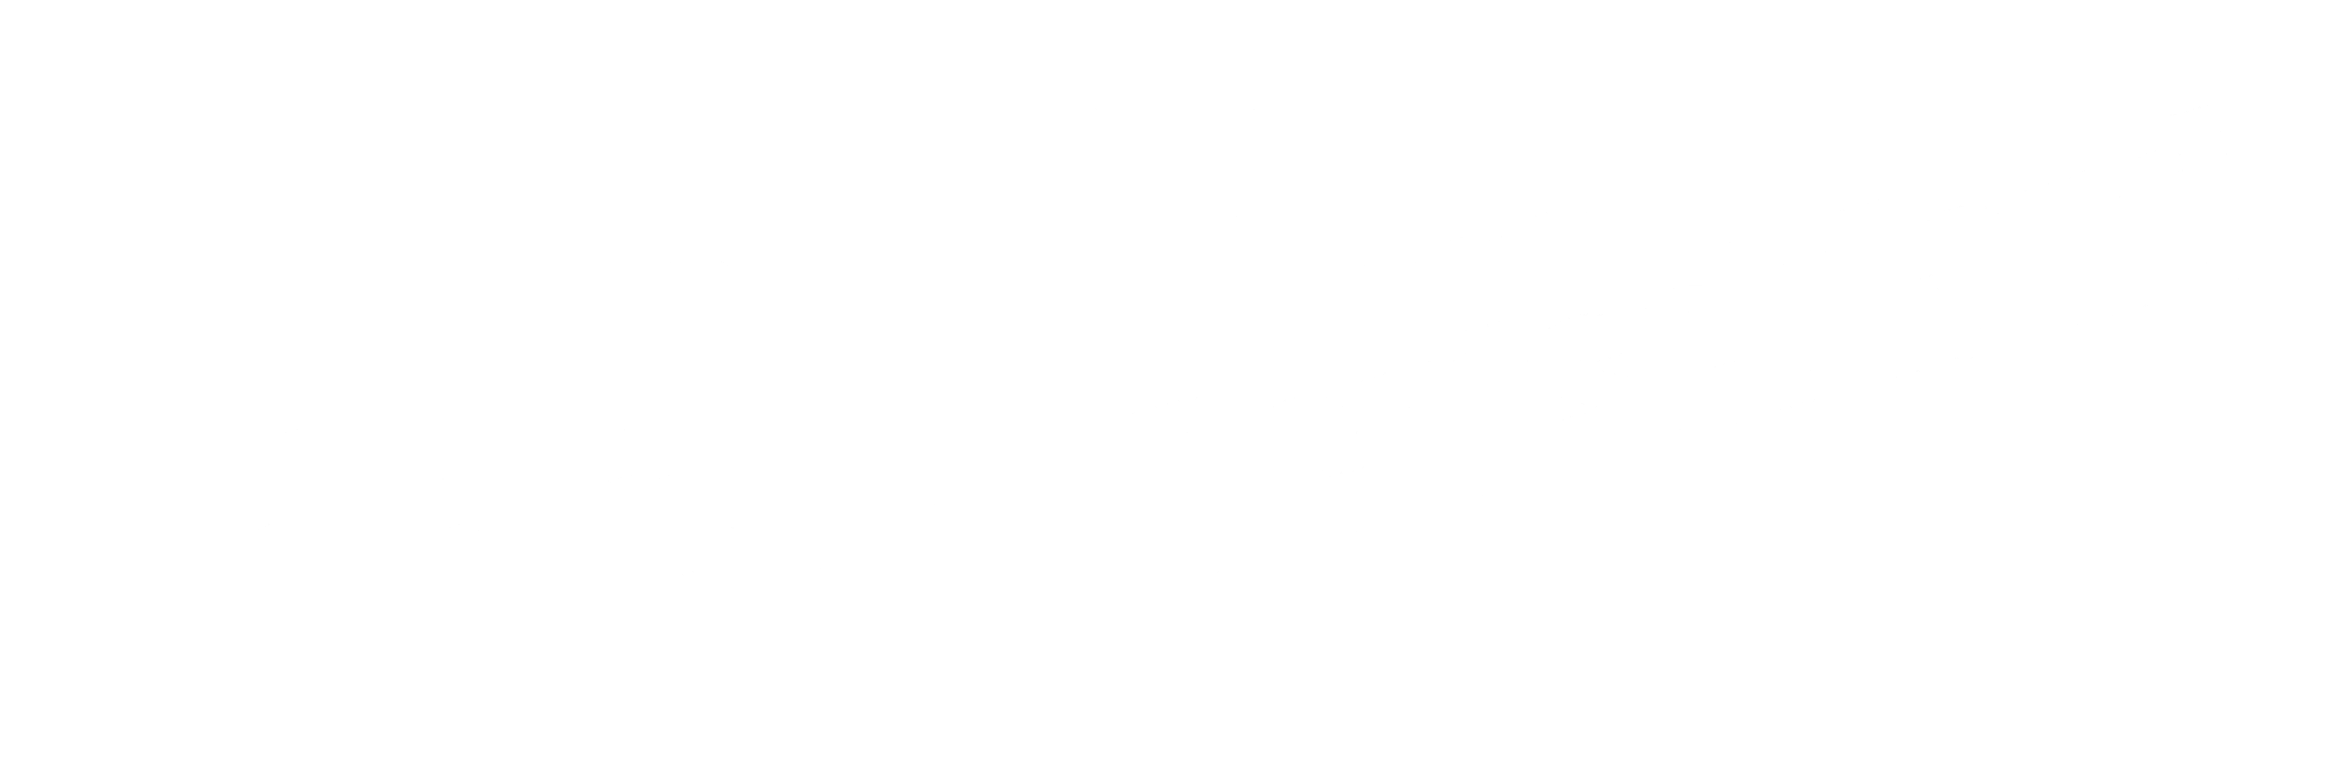 James Bond Club Deutschland e.V.